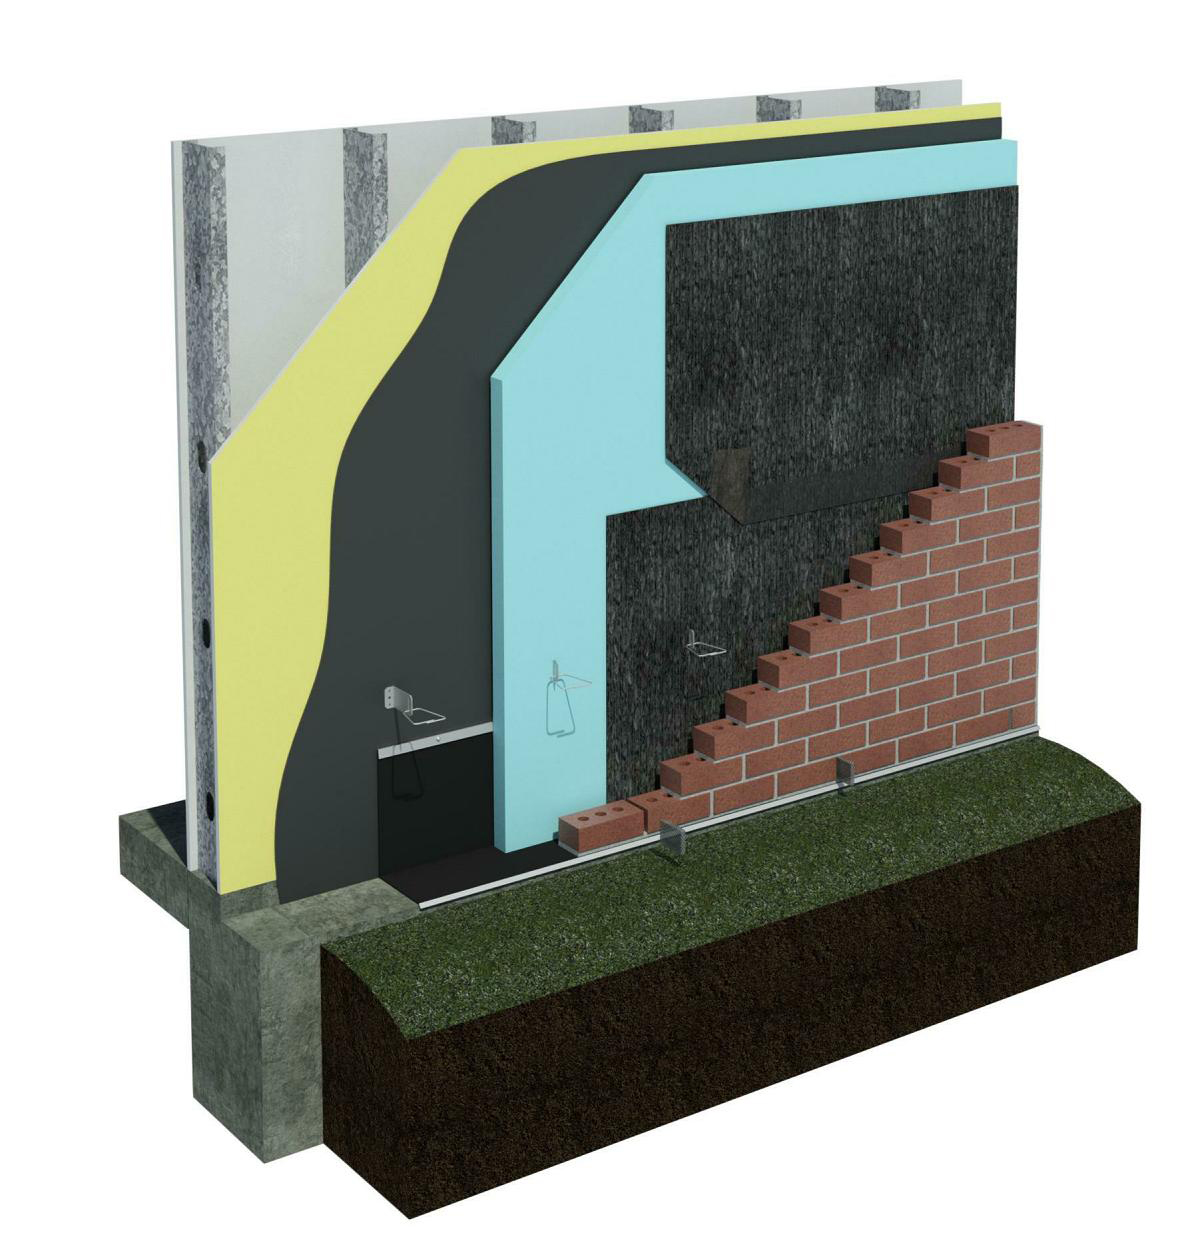 DriPlane metal stud wall with brick veneer